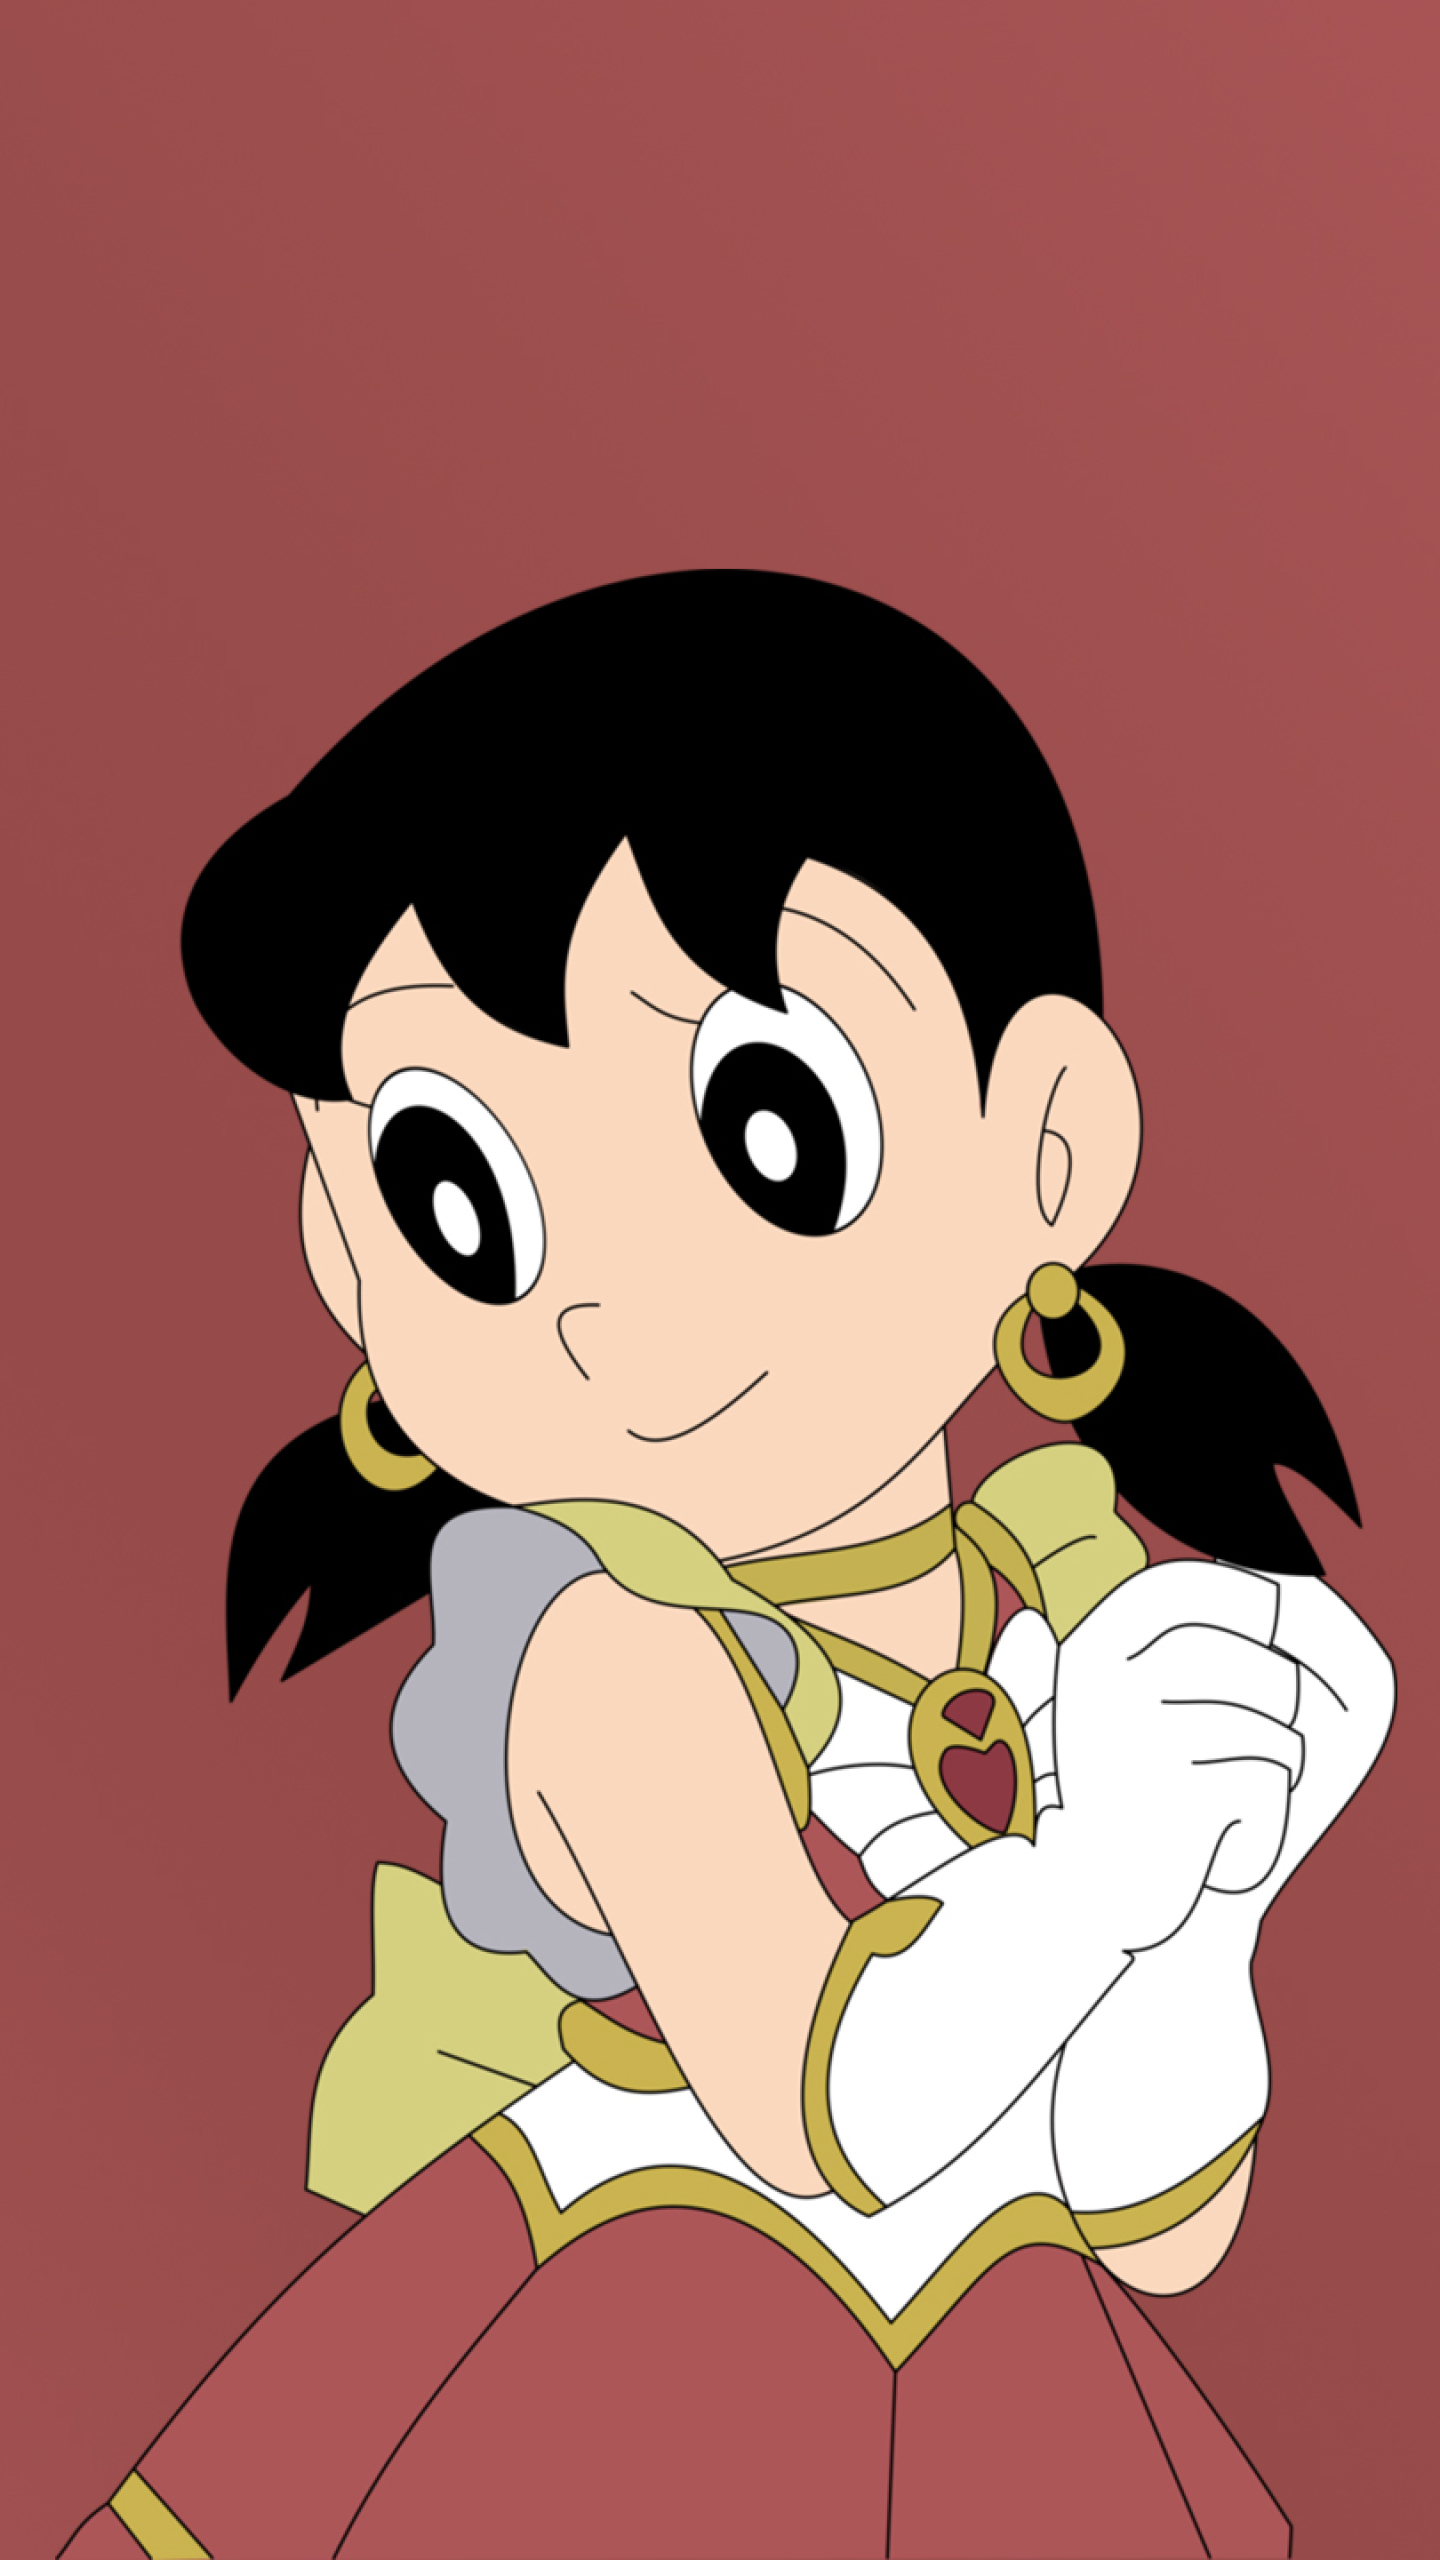 Shizuka, cô bé xinh đẹp trong bộ truyện Doraemon, chắc chắn sẽ làm bạn phải say đắm vì những hình ảnh dễ thương và đáng yêu của mình. Hãy cùng xem những hình Shizuka với các biểu cảm ngây thơ, tinh nghịch và đáng yêu, và nâng cao tinh thần của mình khi làm việc hay học tập.